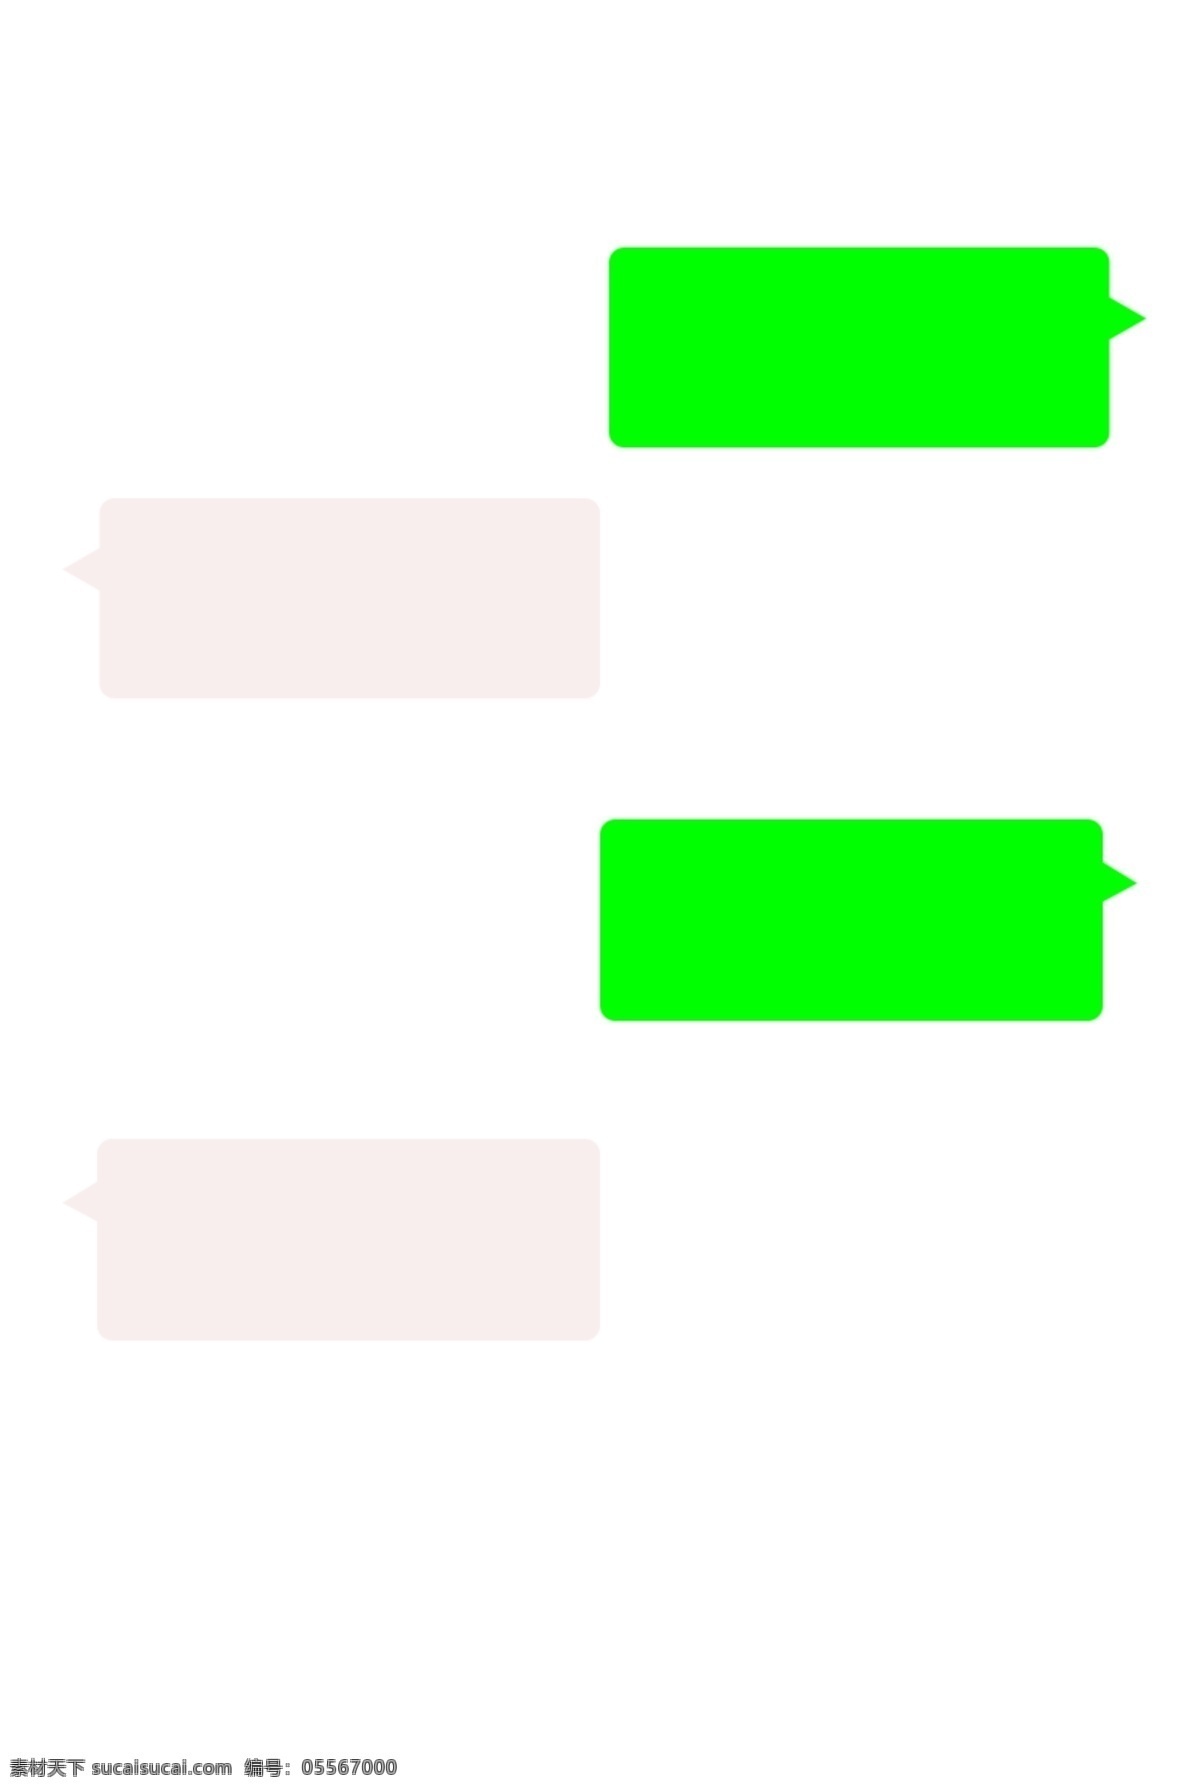 微信对话框 微信 对话框 绿框 白框 综合框 底纹边框 其他素材